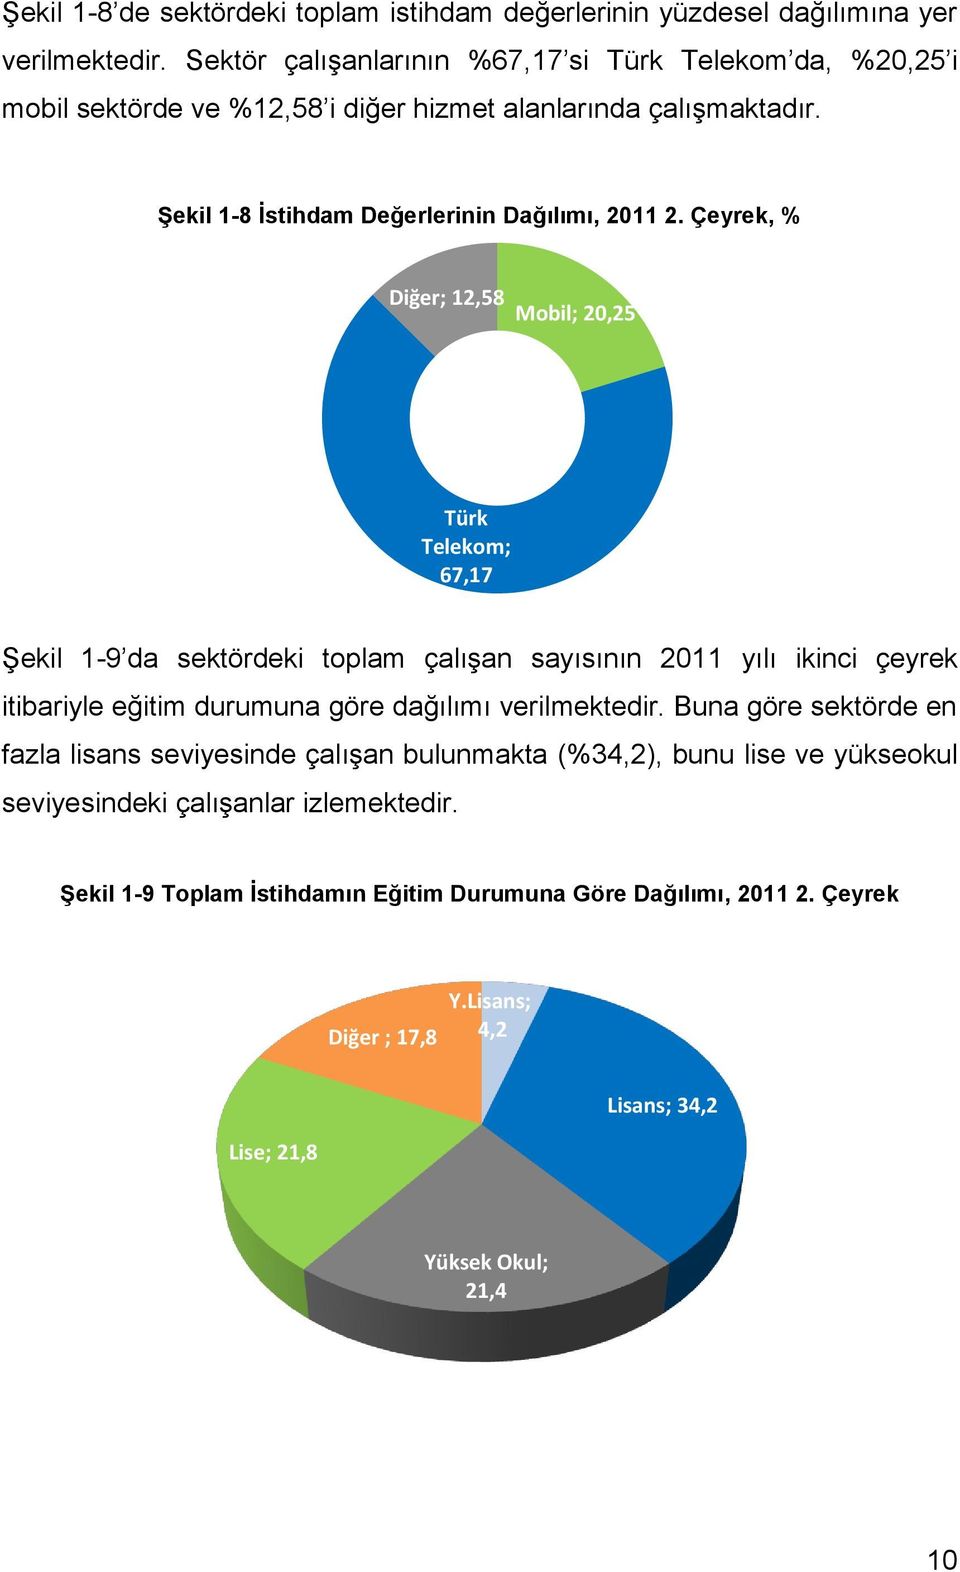 Çeyrek, % Diğer; 12,58 Mobil; 20,25 Türk Telekom; 67,17 Şekil 1-9 da sektördeki toplam çalışan sayısının 2011 yılı ikinci çeyrek itibariyle eğitim durumuna göre dağılımı verilmektedir.